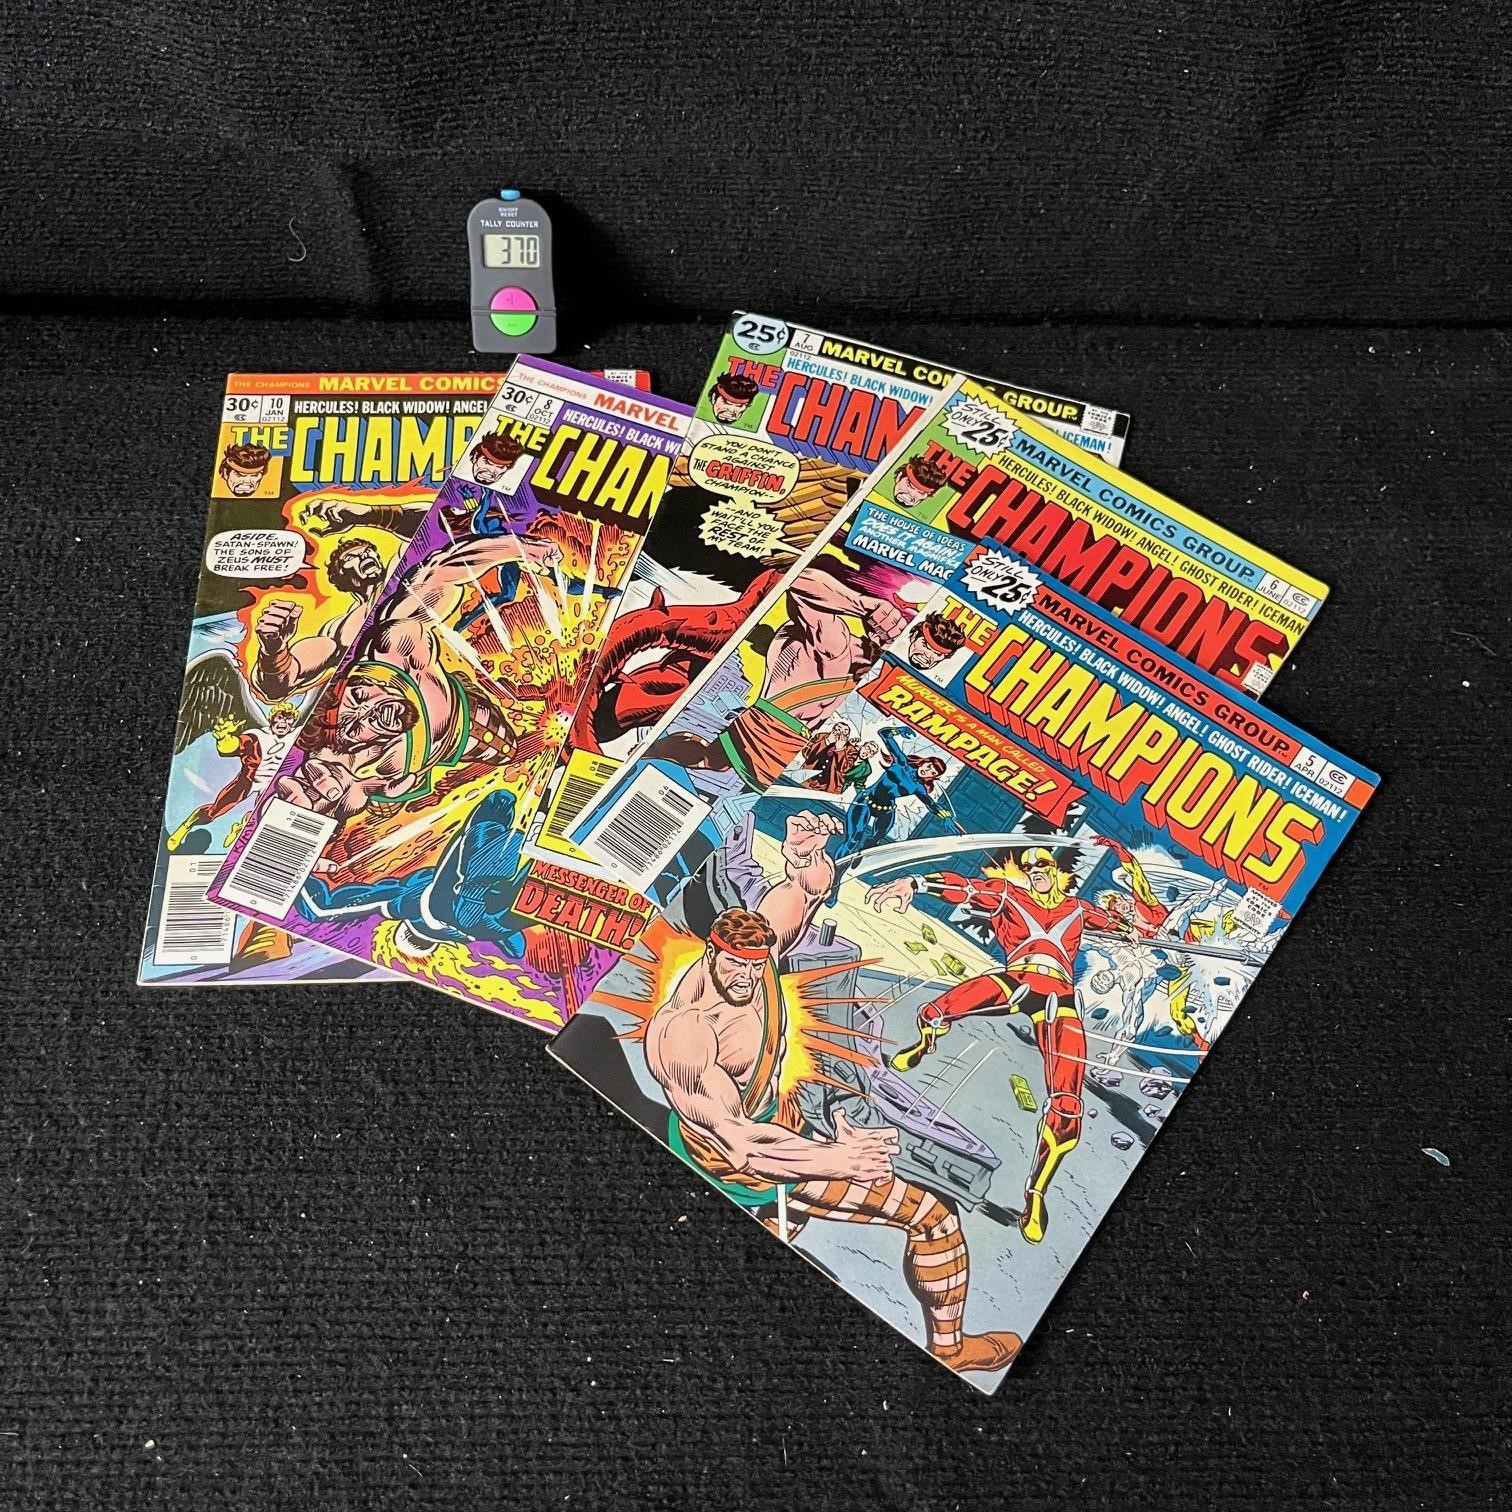 June Comic Wonderland Auction